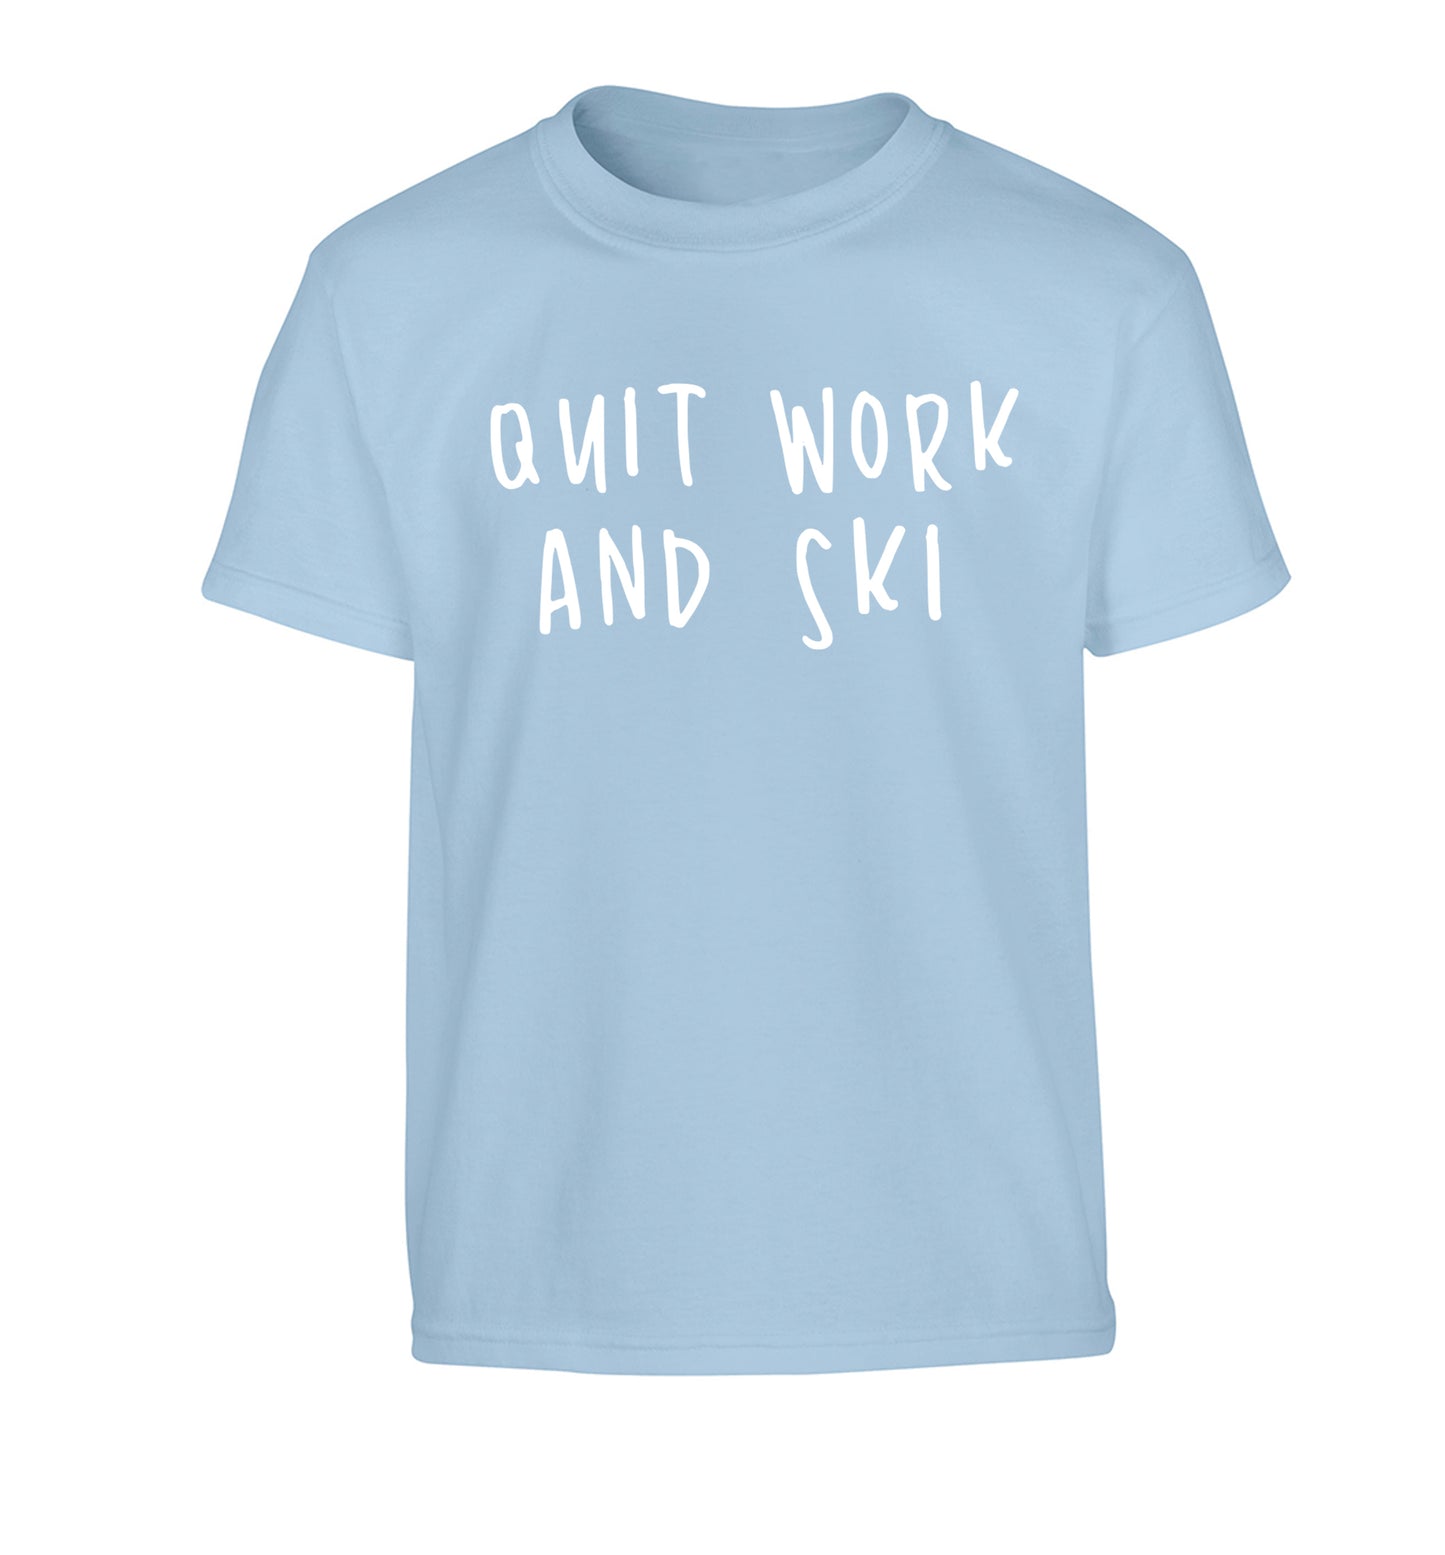 Quit work and ski Children's light blue Tshirt 12-14 Years